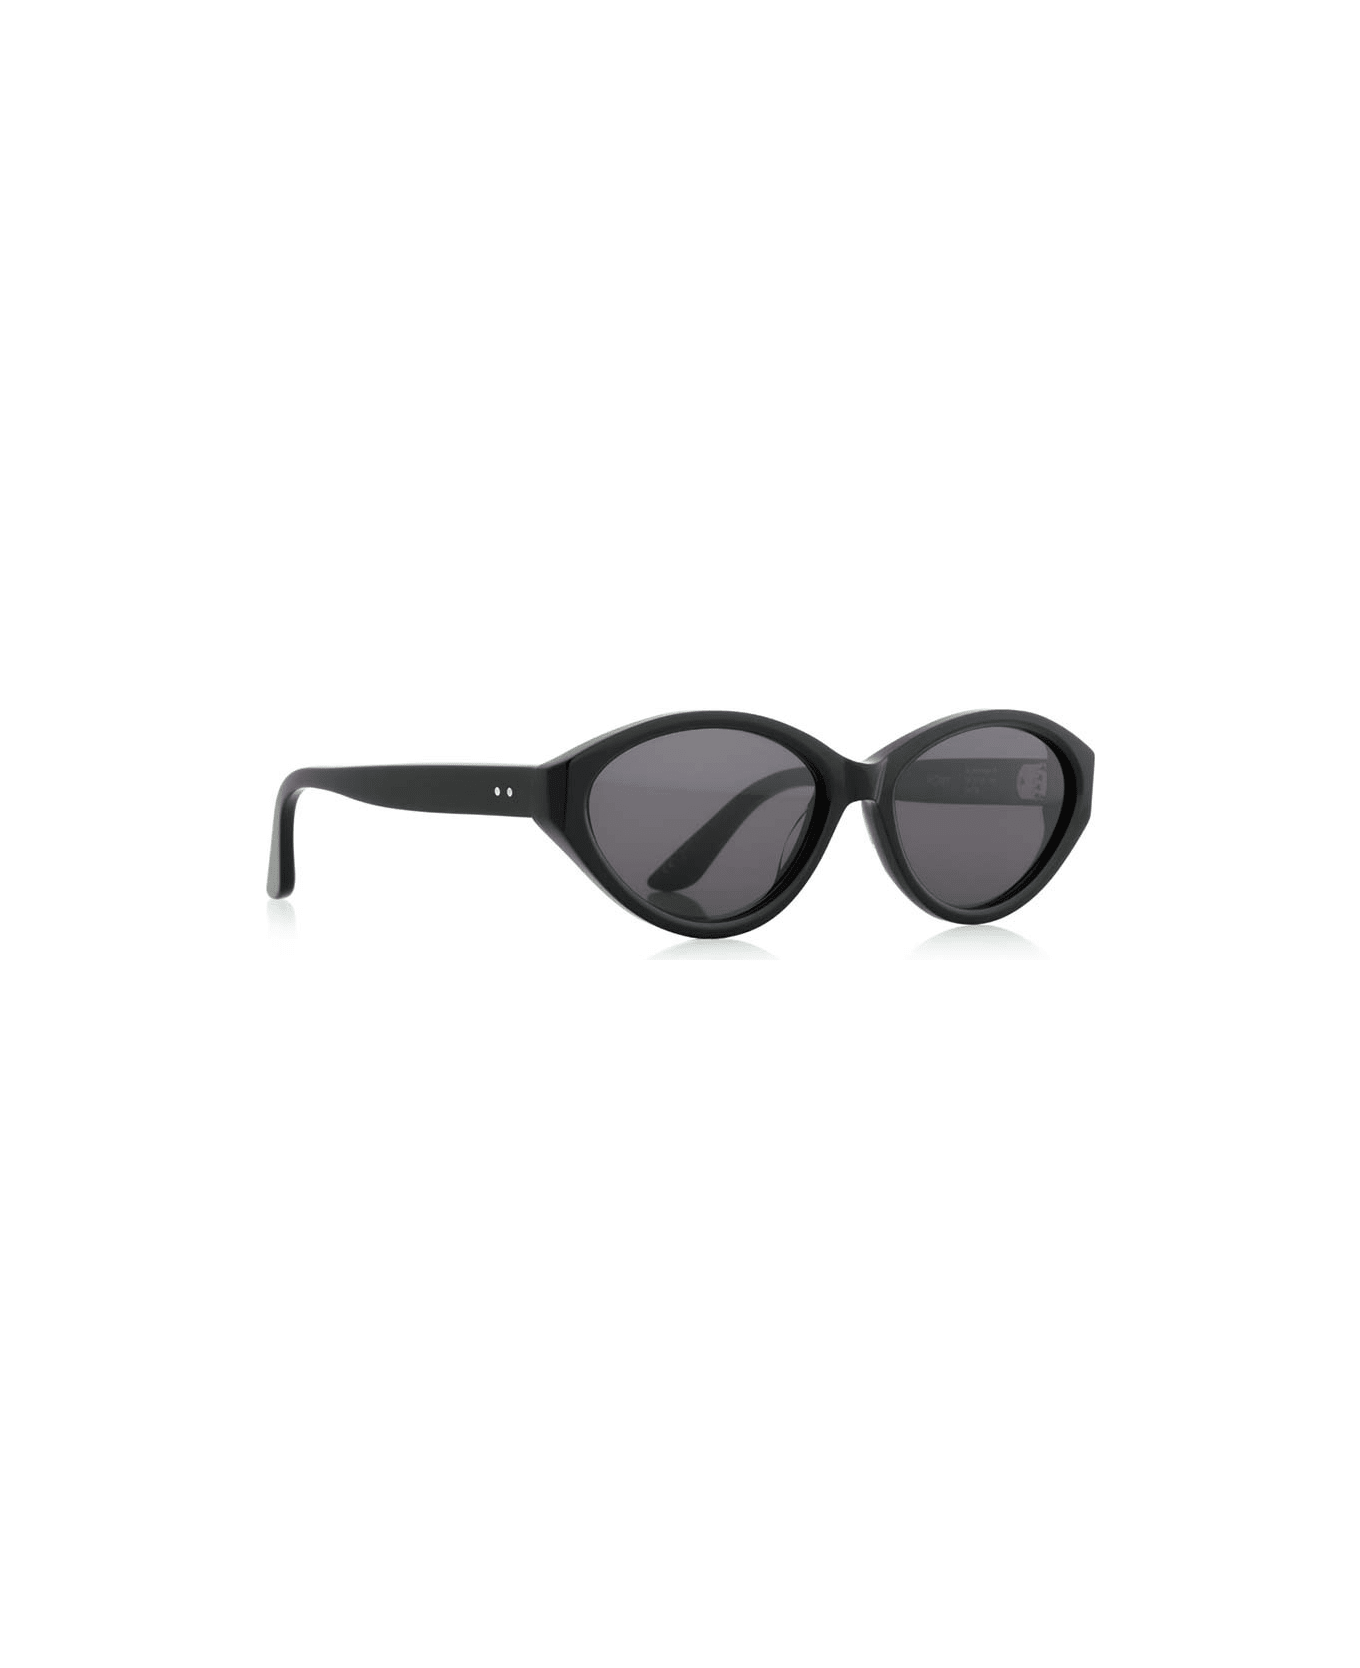 Robert La Roche Sunglasses - Nero/Grigio サングラス